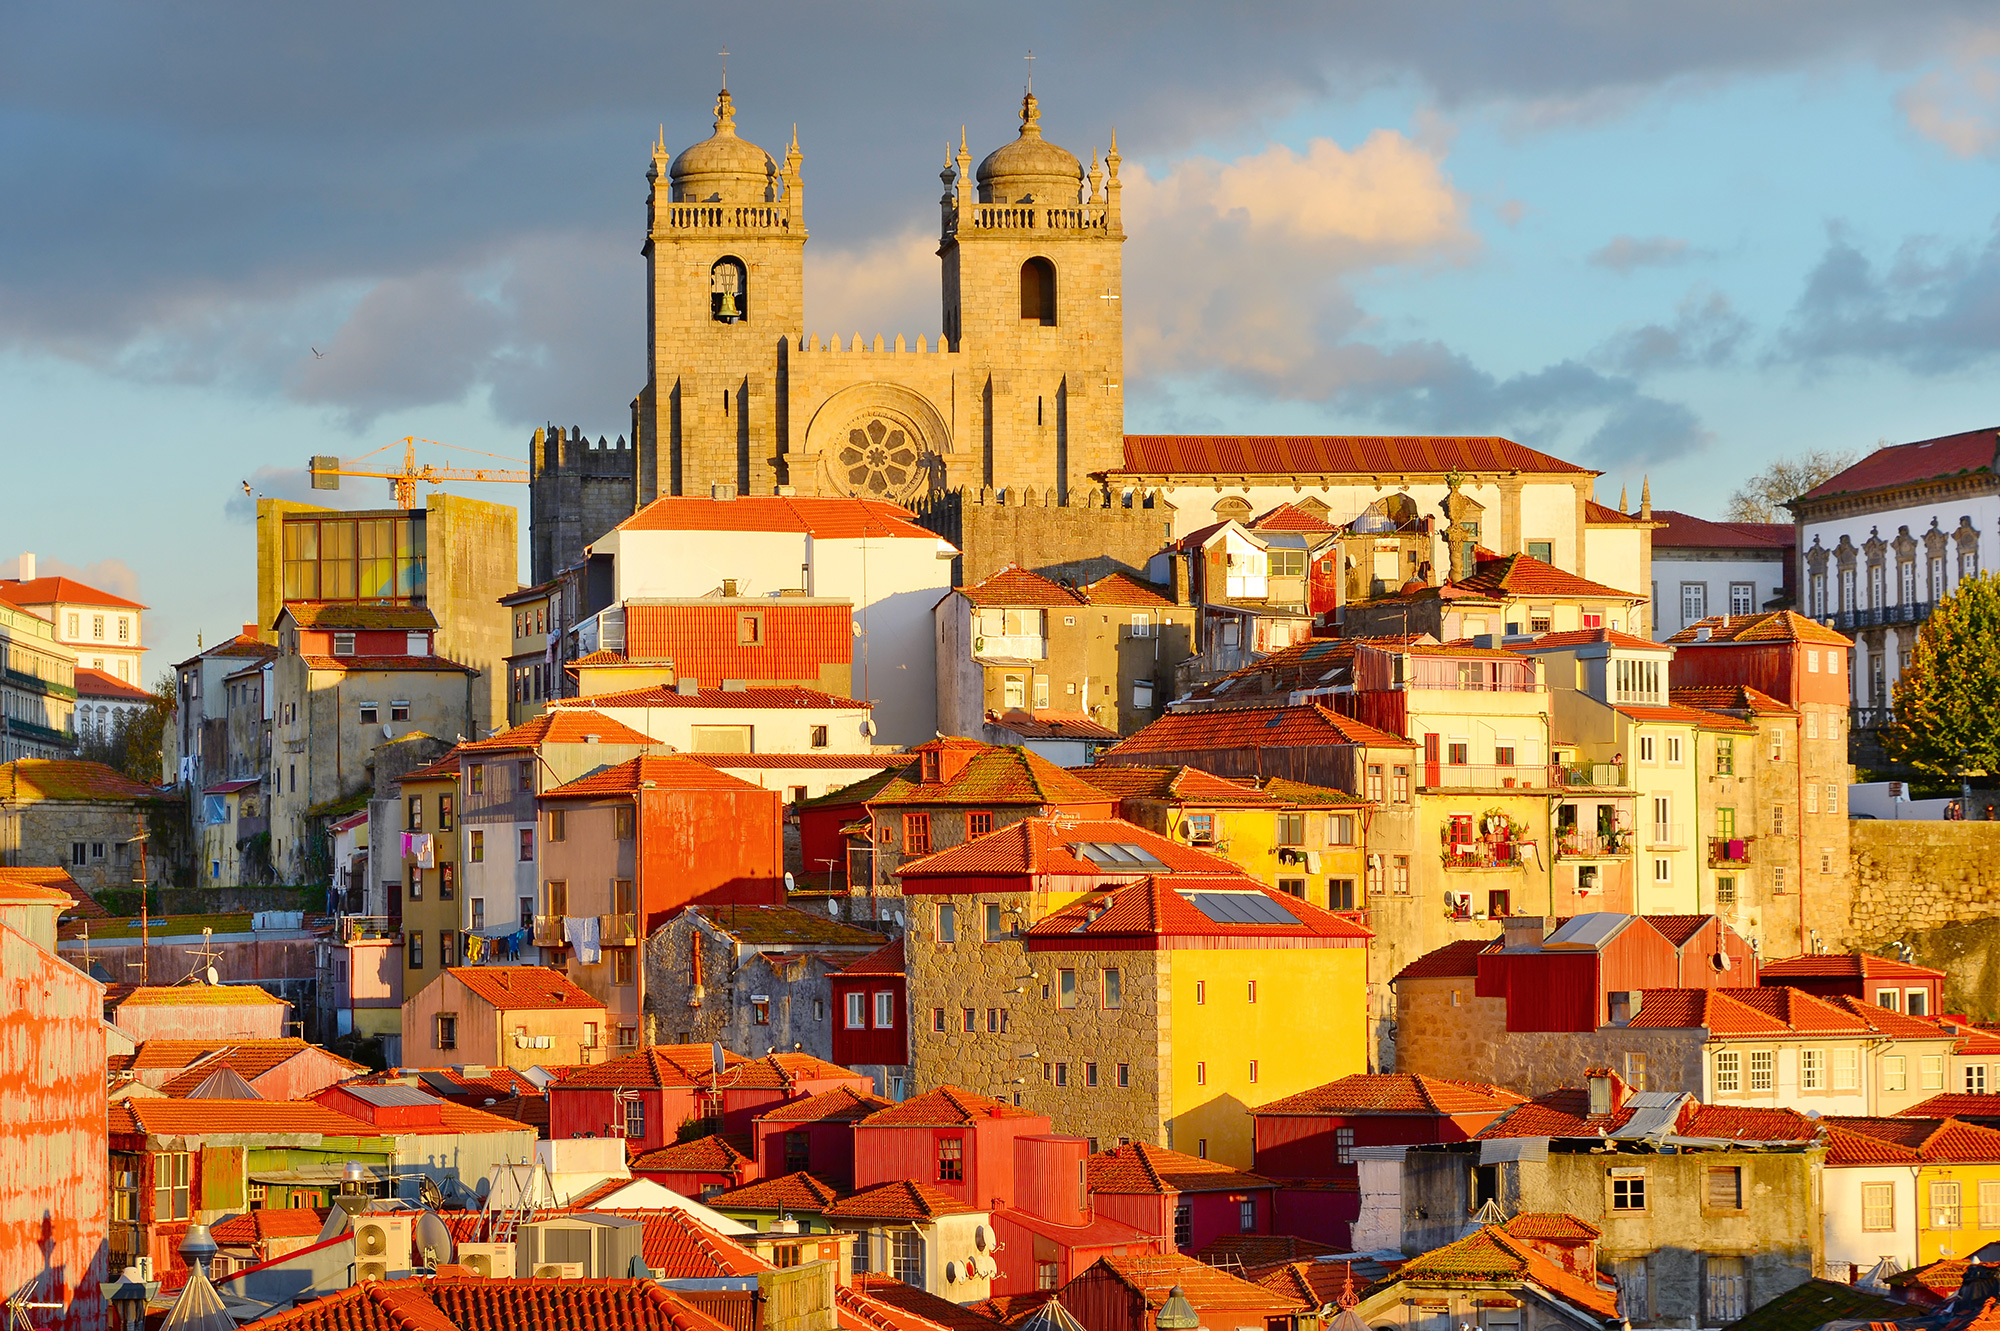 Tourisme - Le Portugal, destination accessible 2019 pour les personnes handicapées